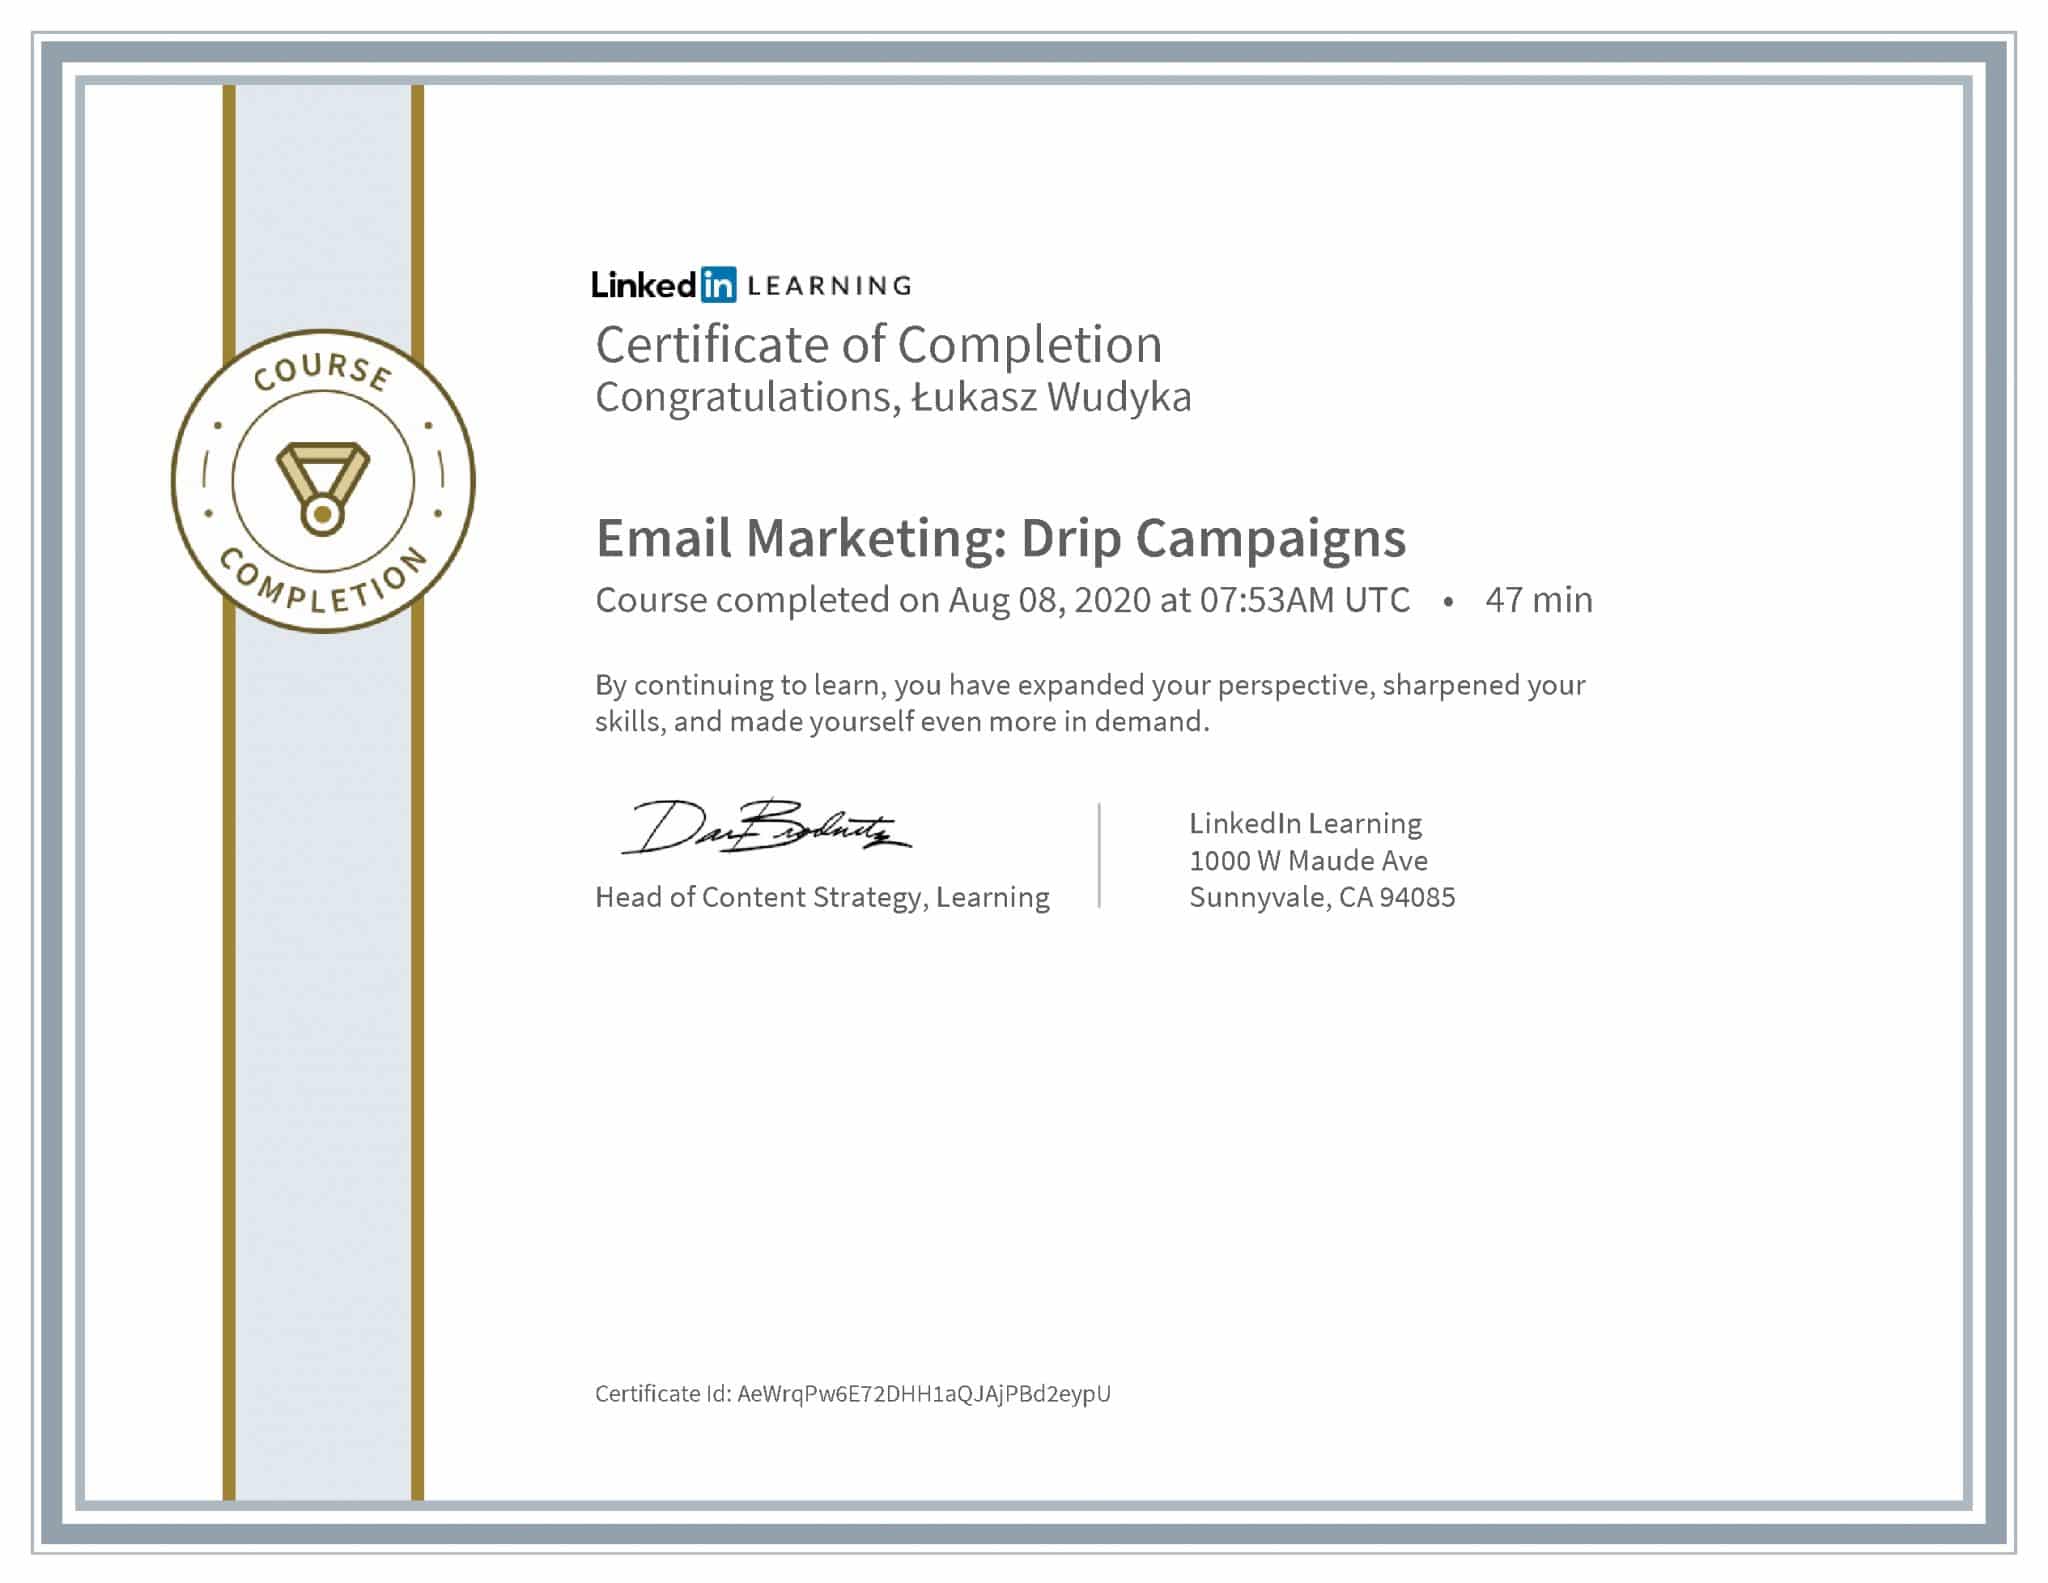 Łukasz Wudyka certyfikat LinkedIn Email Marketing: Drip Campaigns